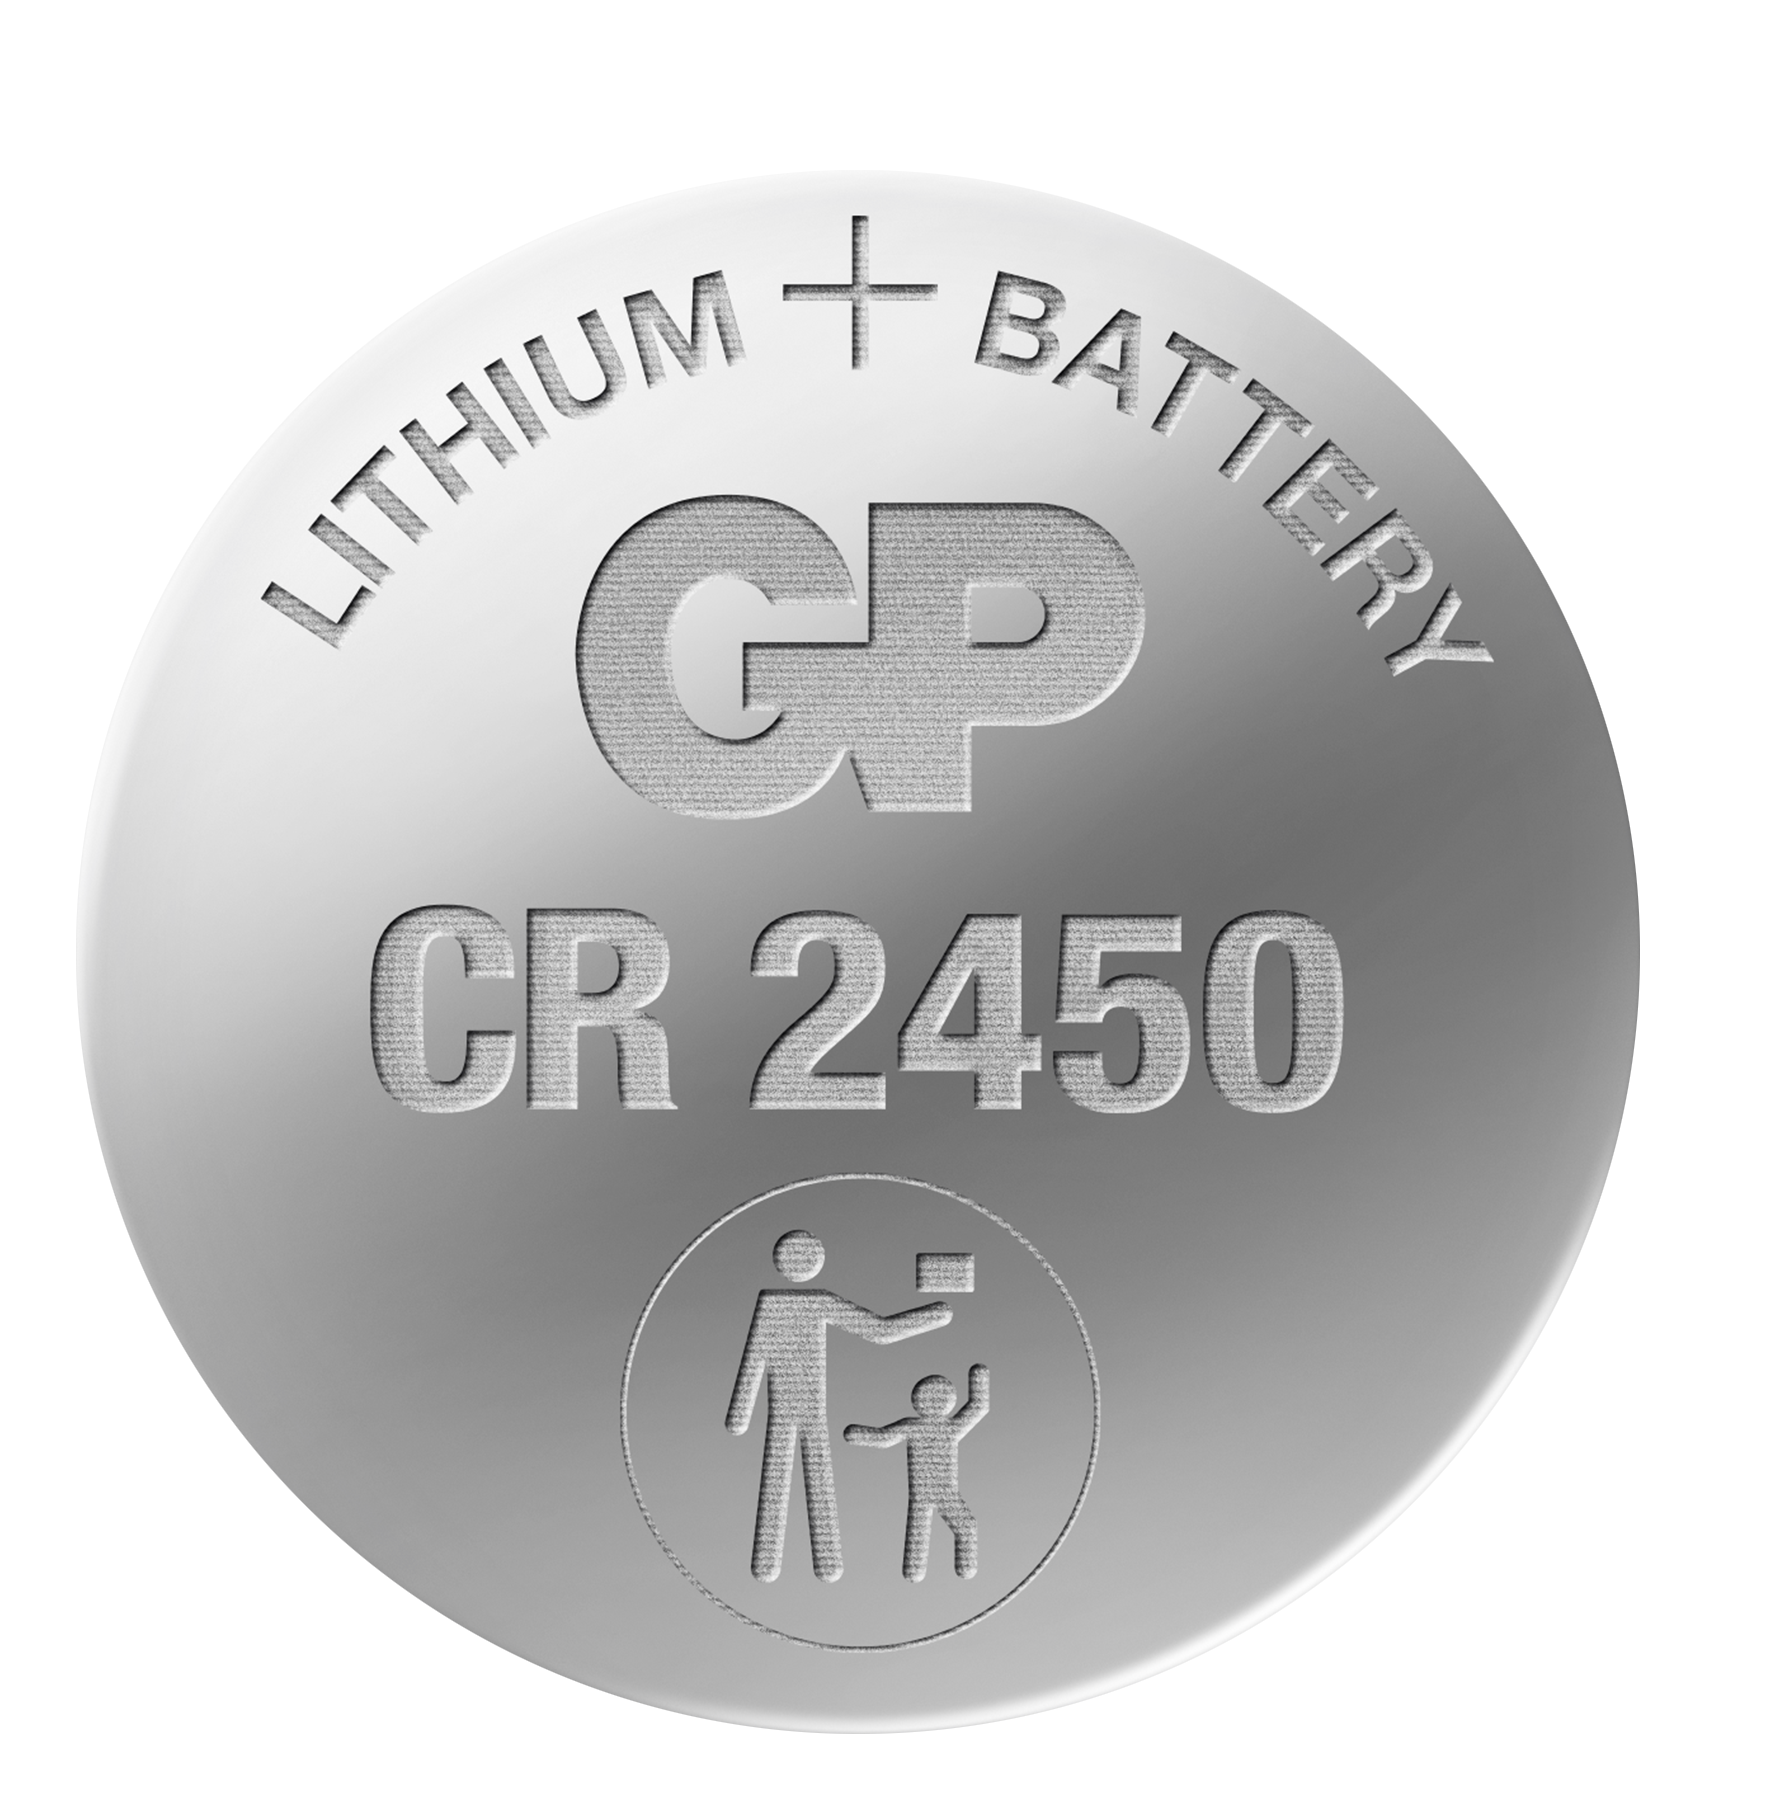 Pila a bottone al litio CR2450